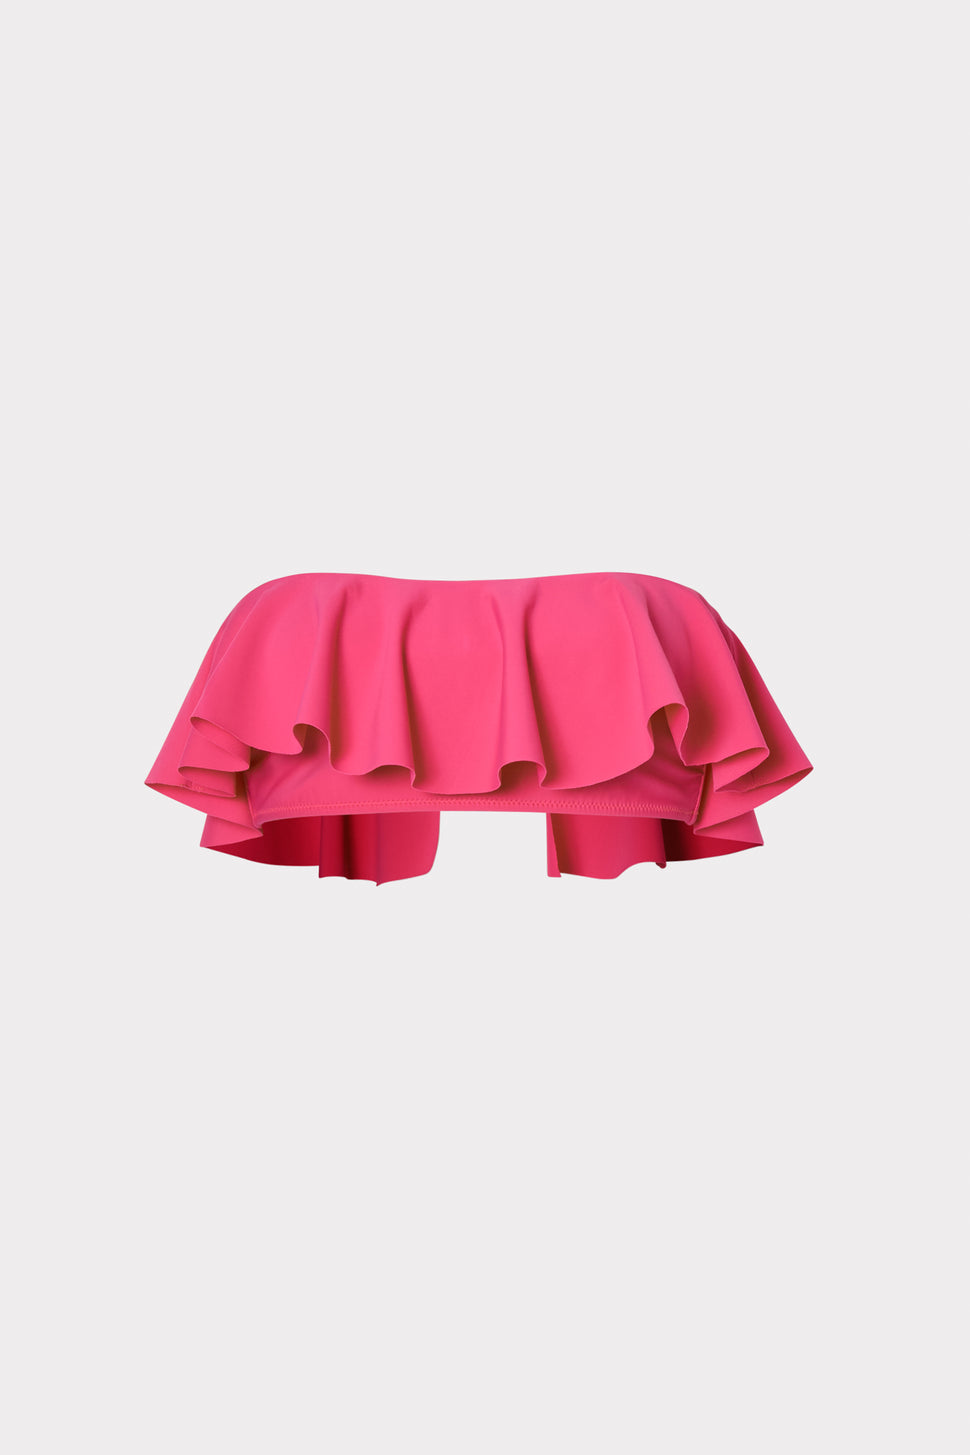 Women's Ruffle Pink Bandeau Bikini Top | MILLY